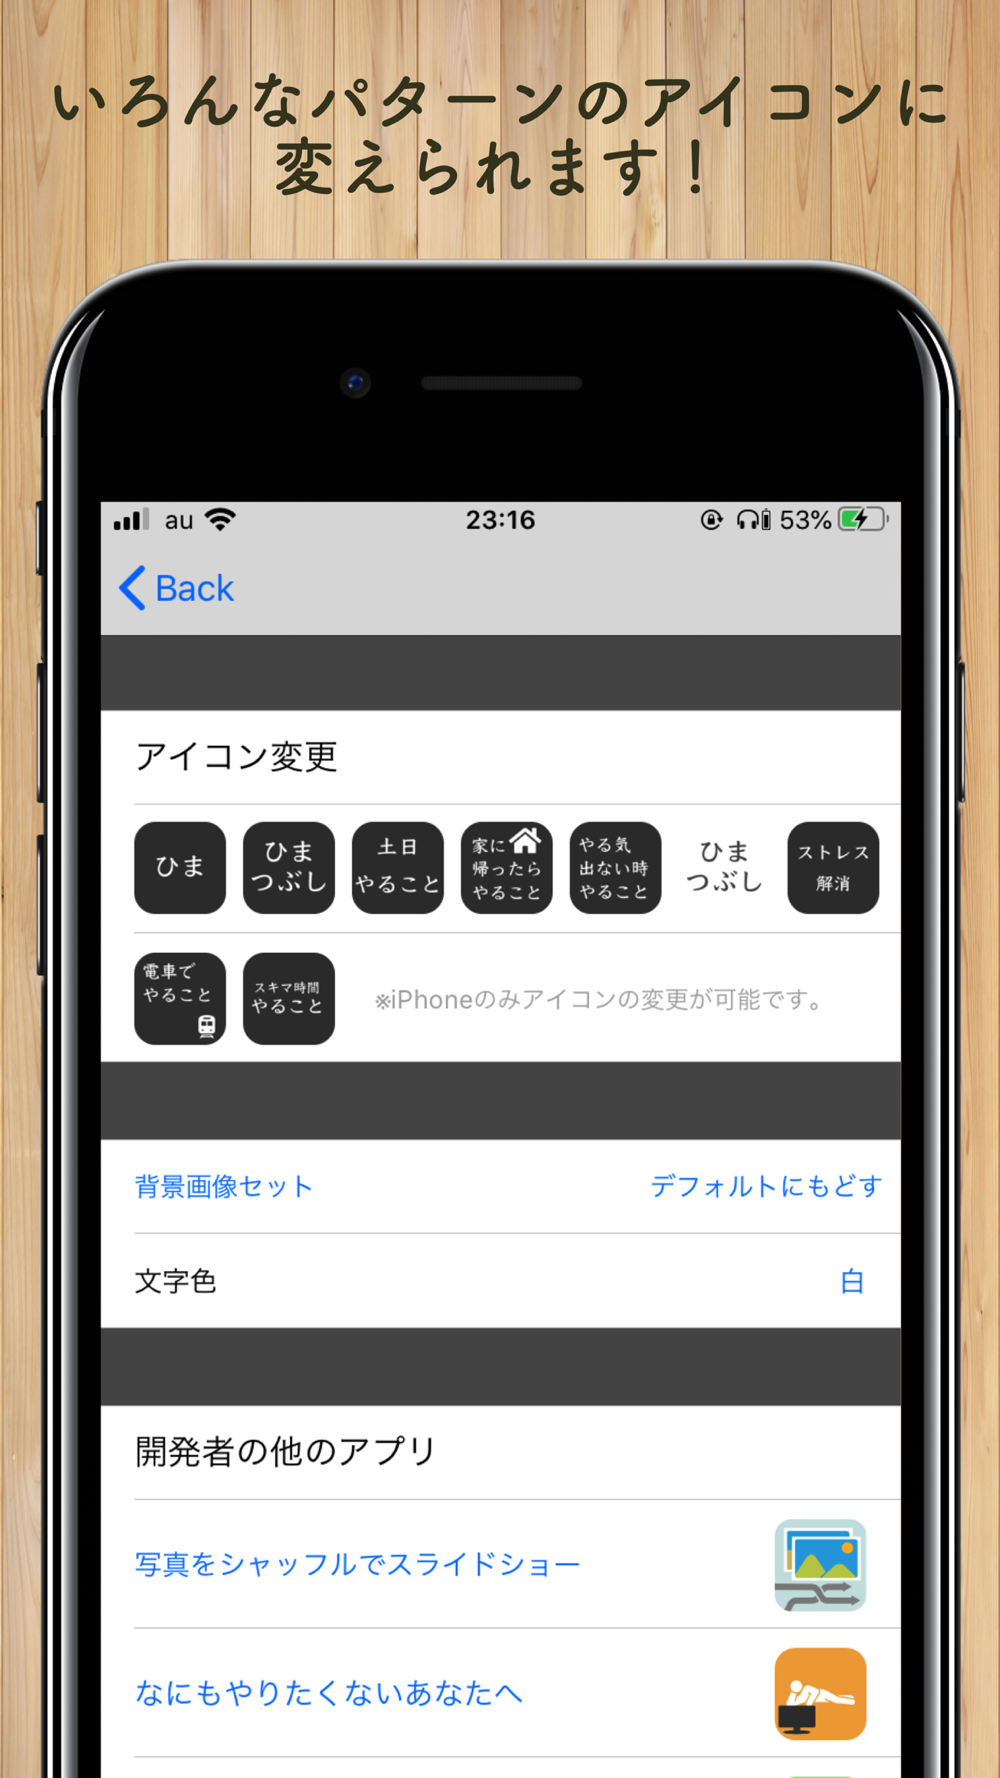 暇なときやることリスト Free Download App For Iphone Steprimo Com